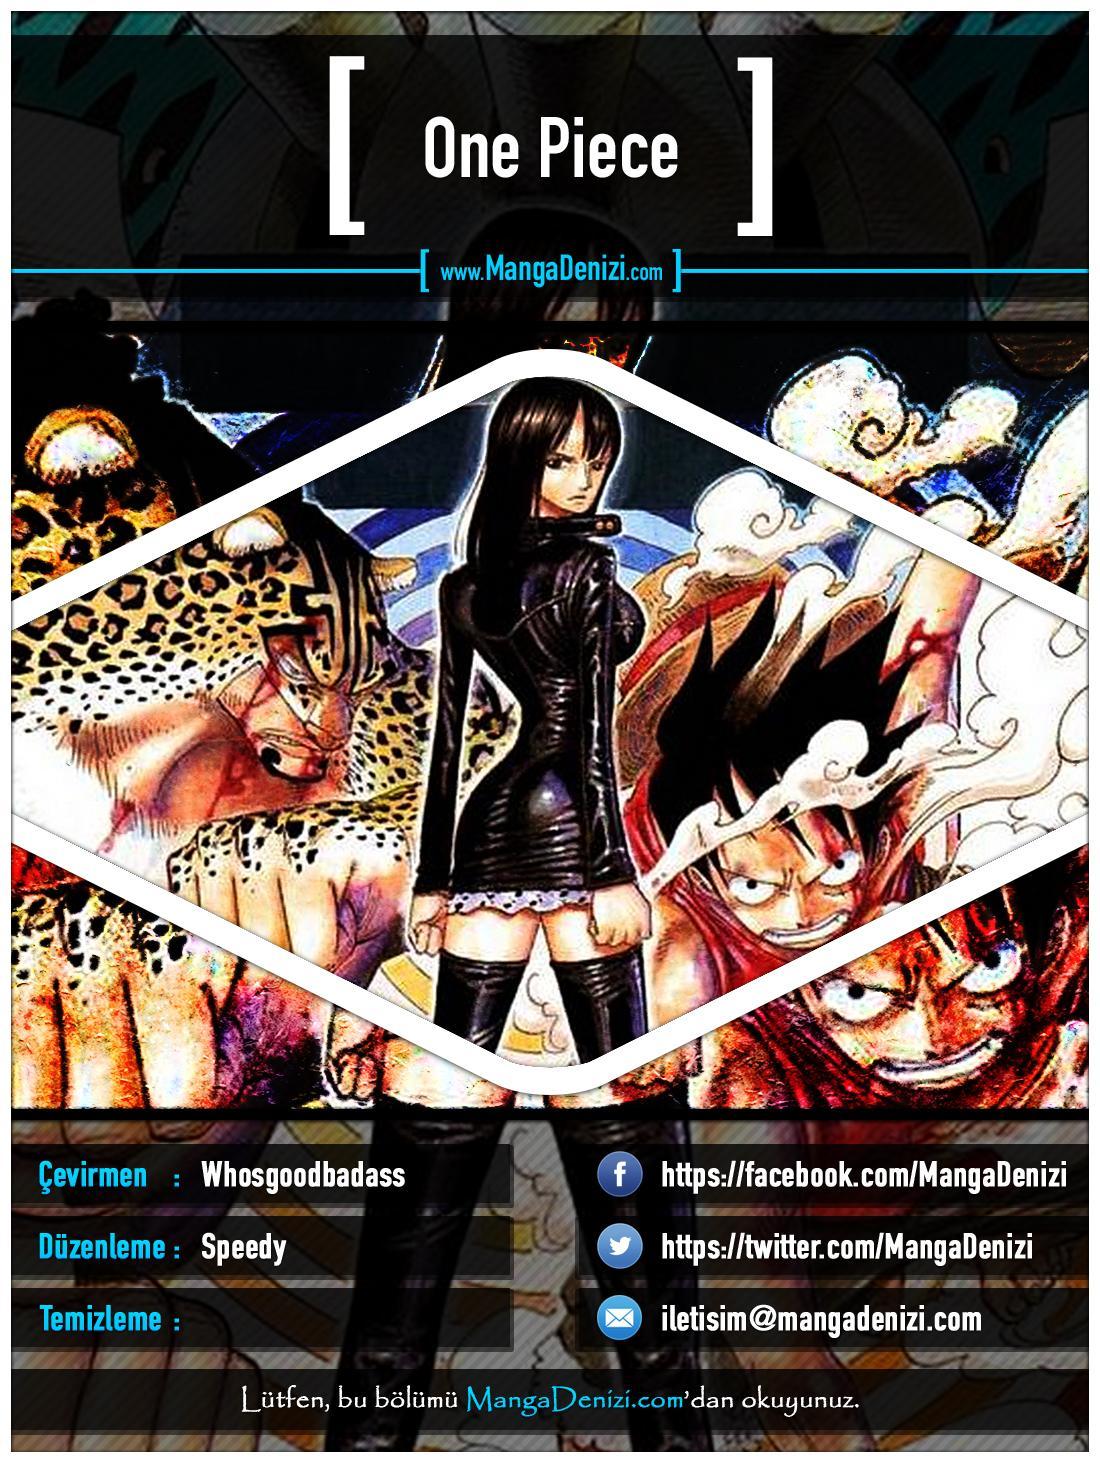 One Piece [Renkli] mangasının 0368 bölümünün 1. sayfasını okuyorsunuz.